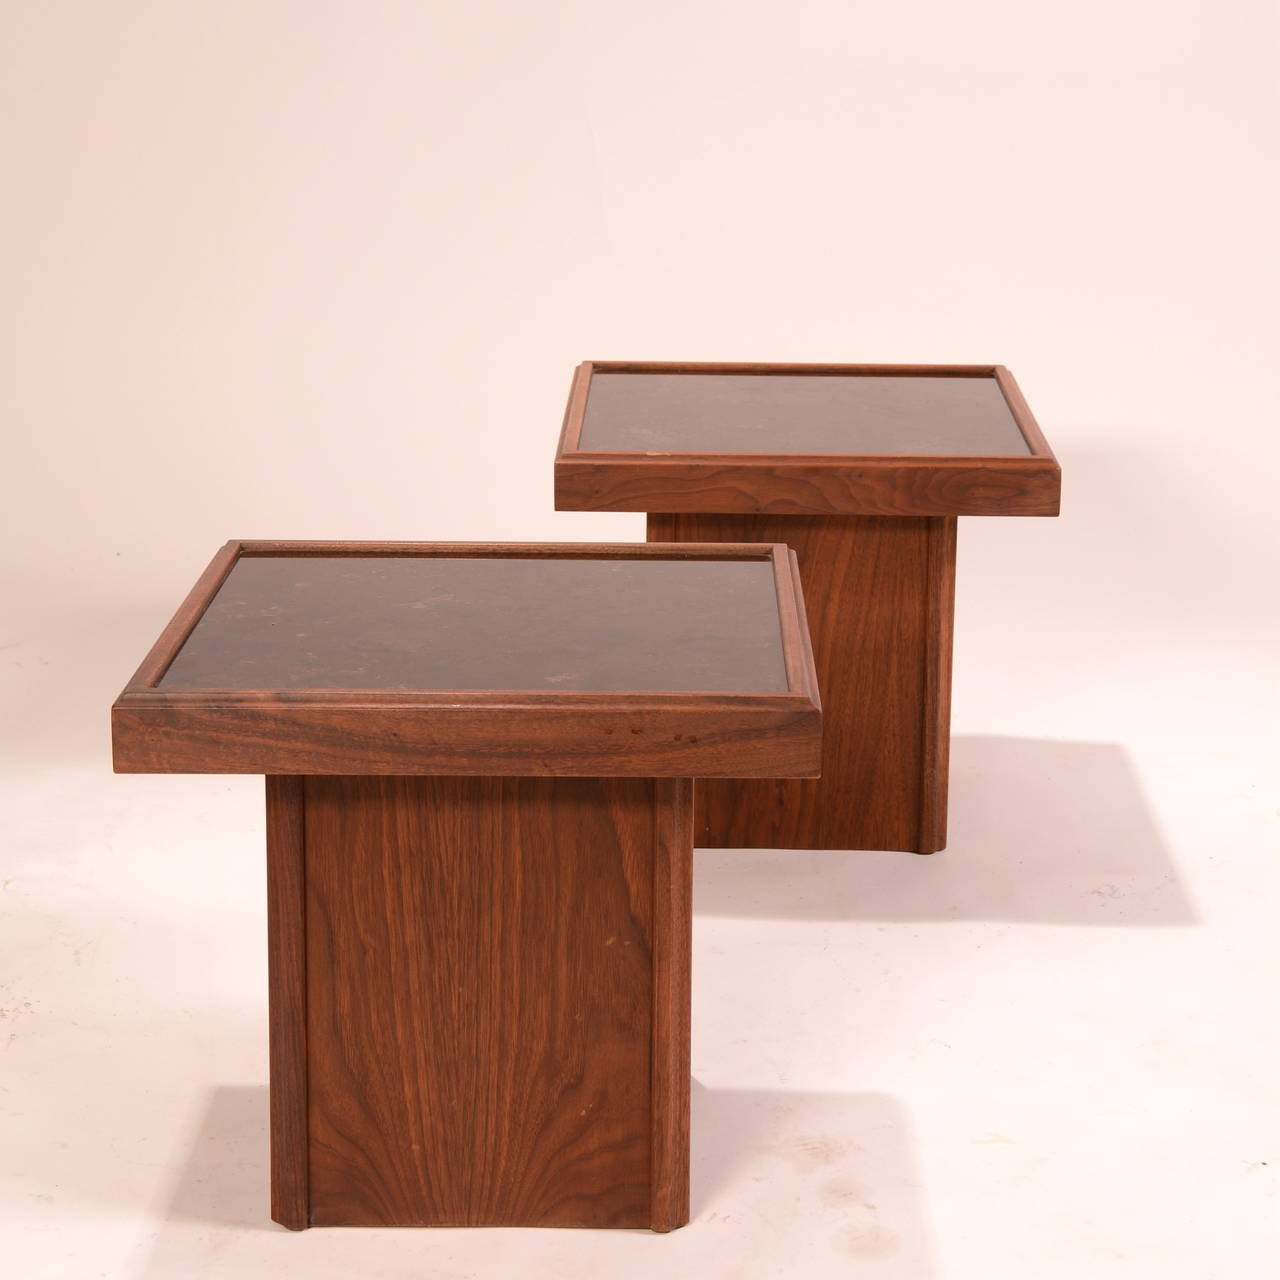 Paire de tables carrées en noyer avec un plateau en carreaux sur un socle carré, par John Keal pour Brown Saltman. Américain, vers 1950.